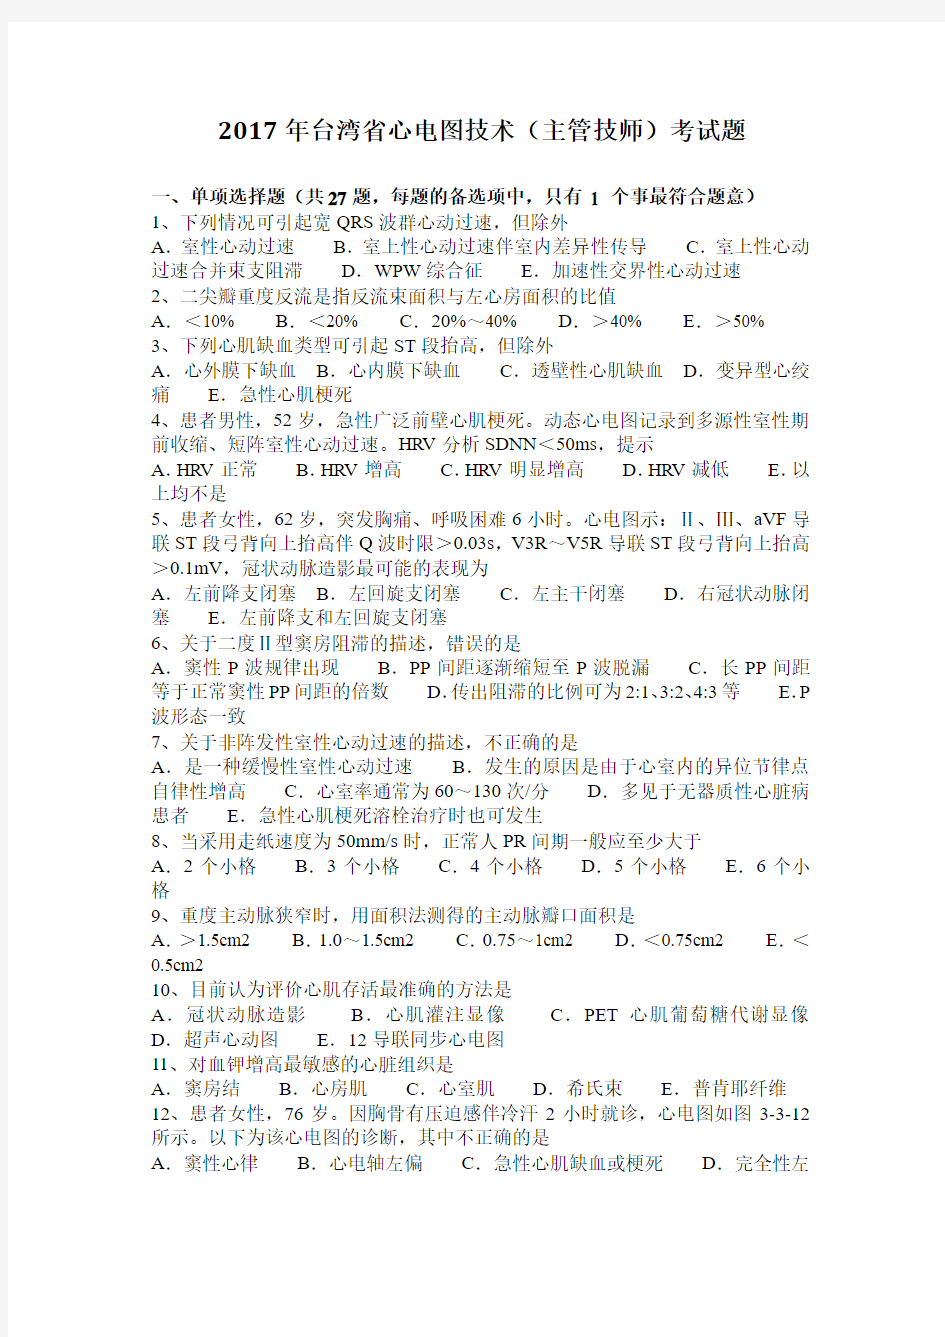 2017年台湾省心电图技术(主管技师)考试题